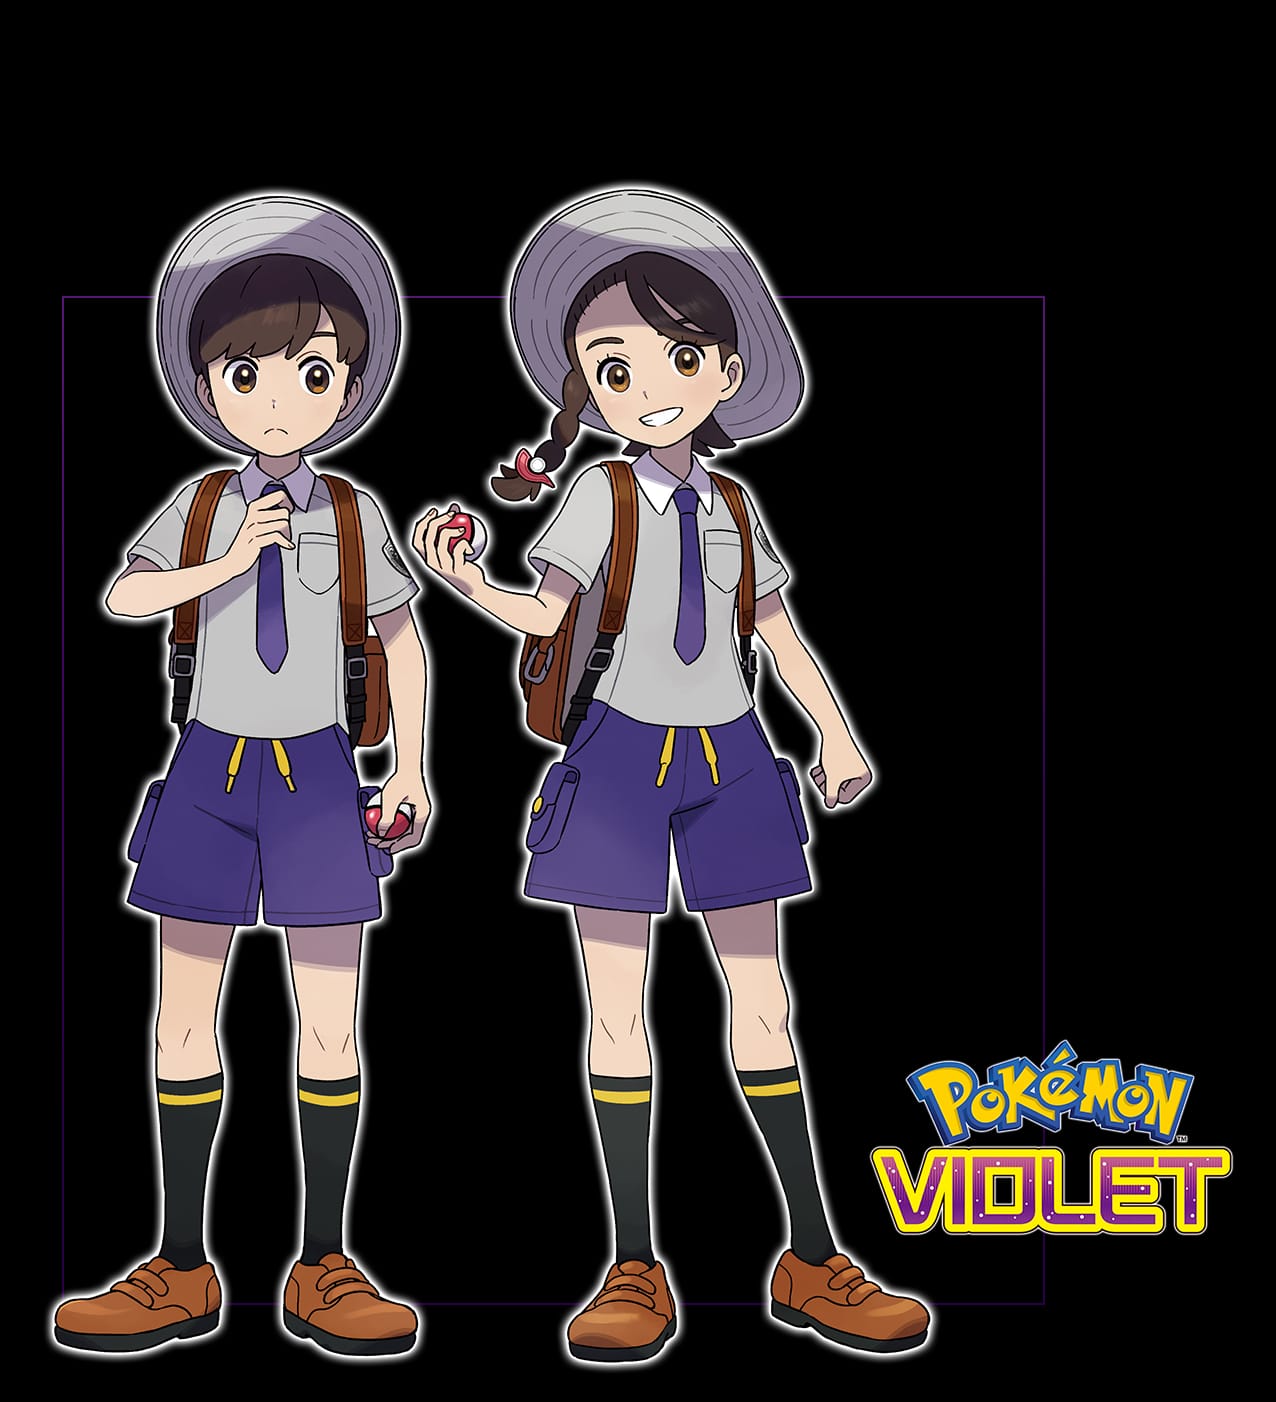 Pokémon Scarlet and Violet Starter Pokémon Details Revealed